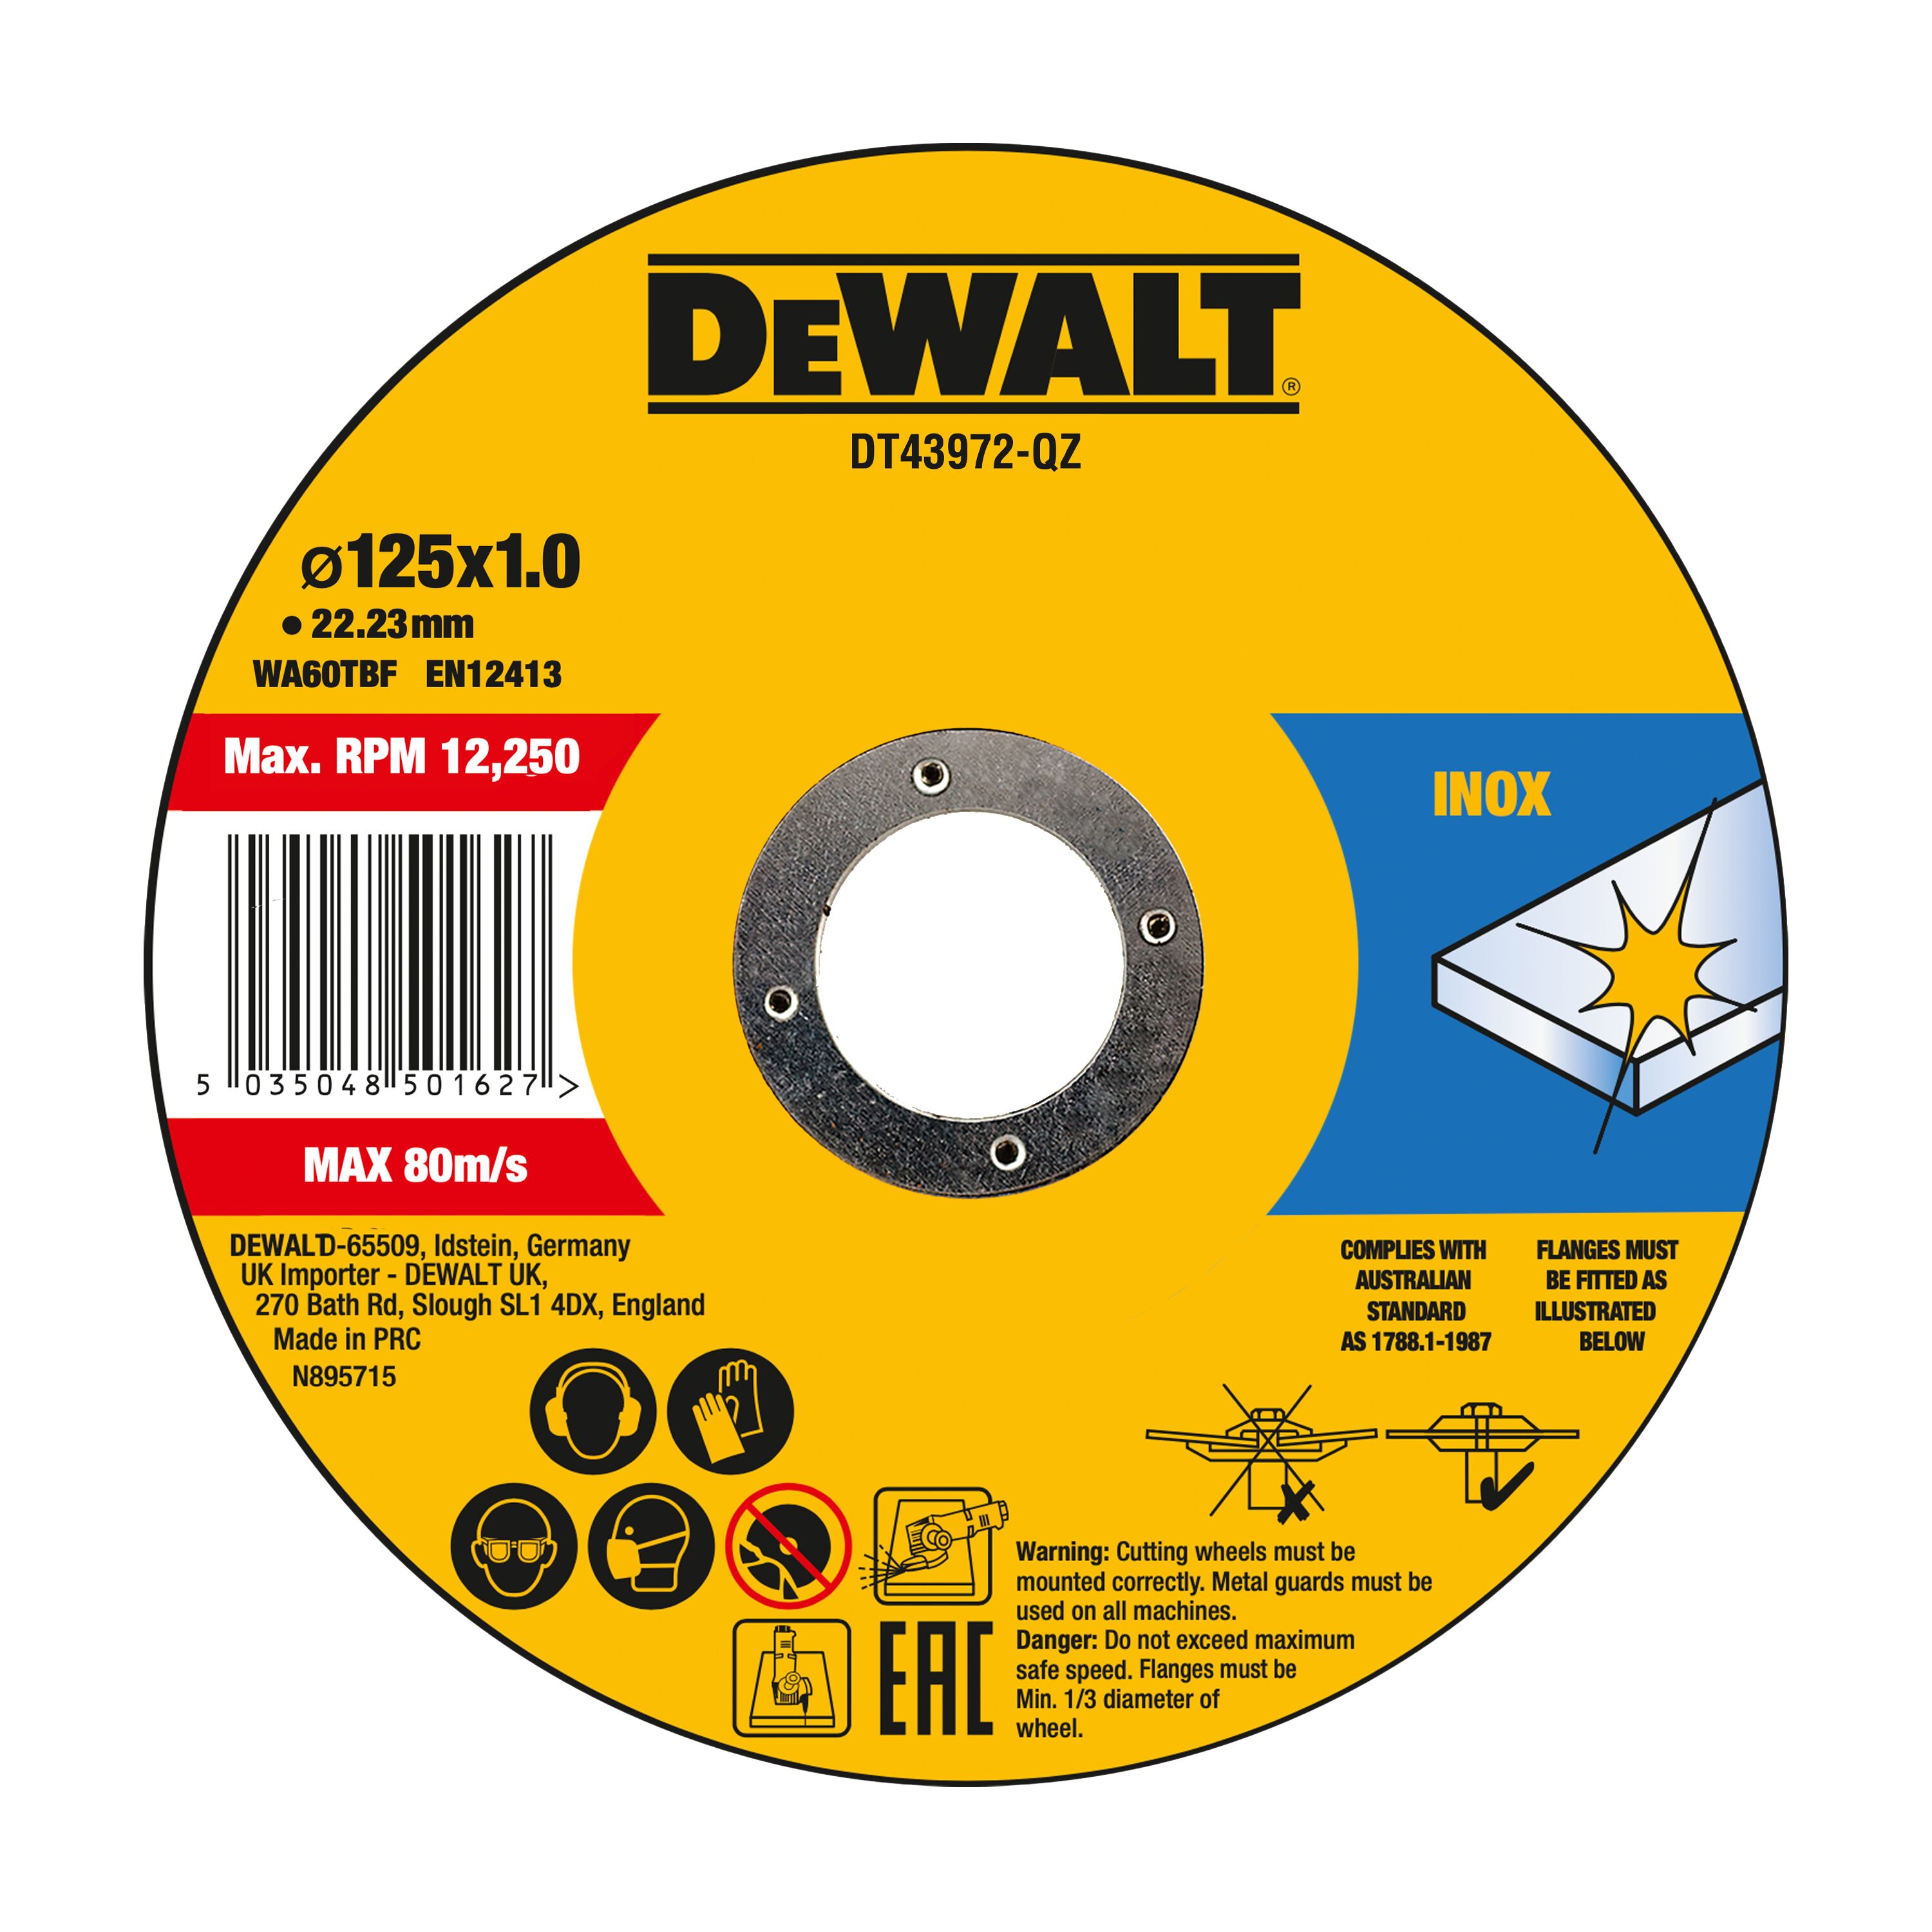 DEWALT High Performance Bonded Disc Thin Fast Cut (10 X Tin) 125mm X 1.0mm X 22.23mm